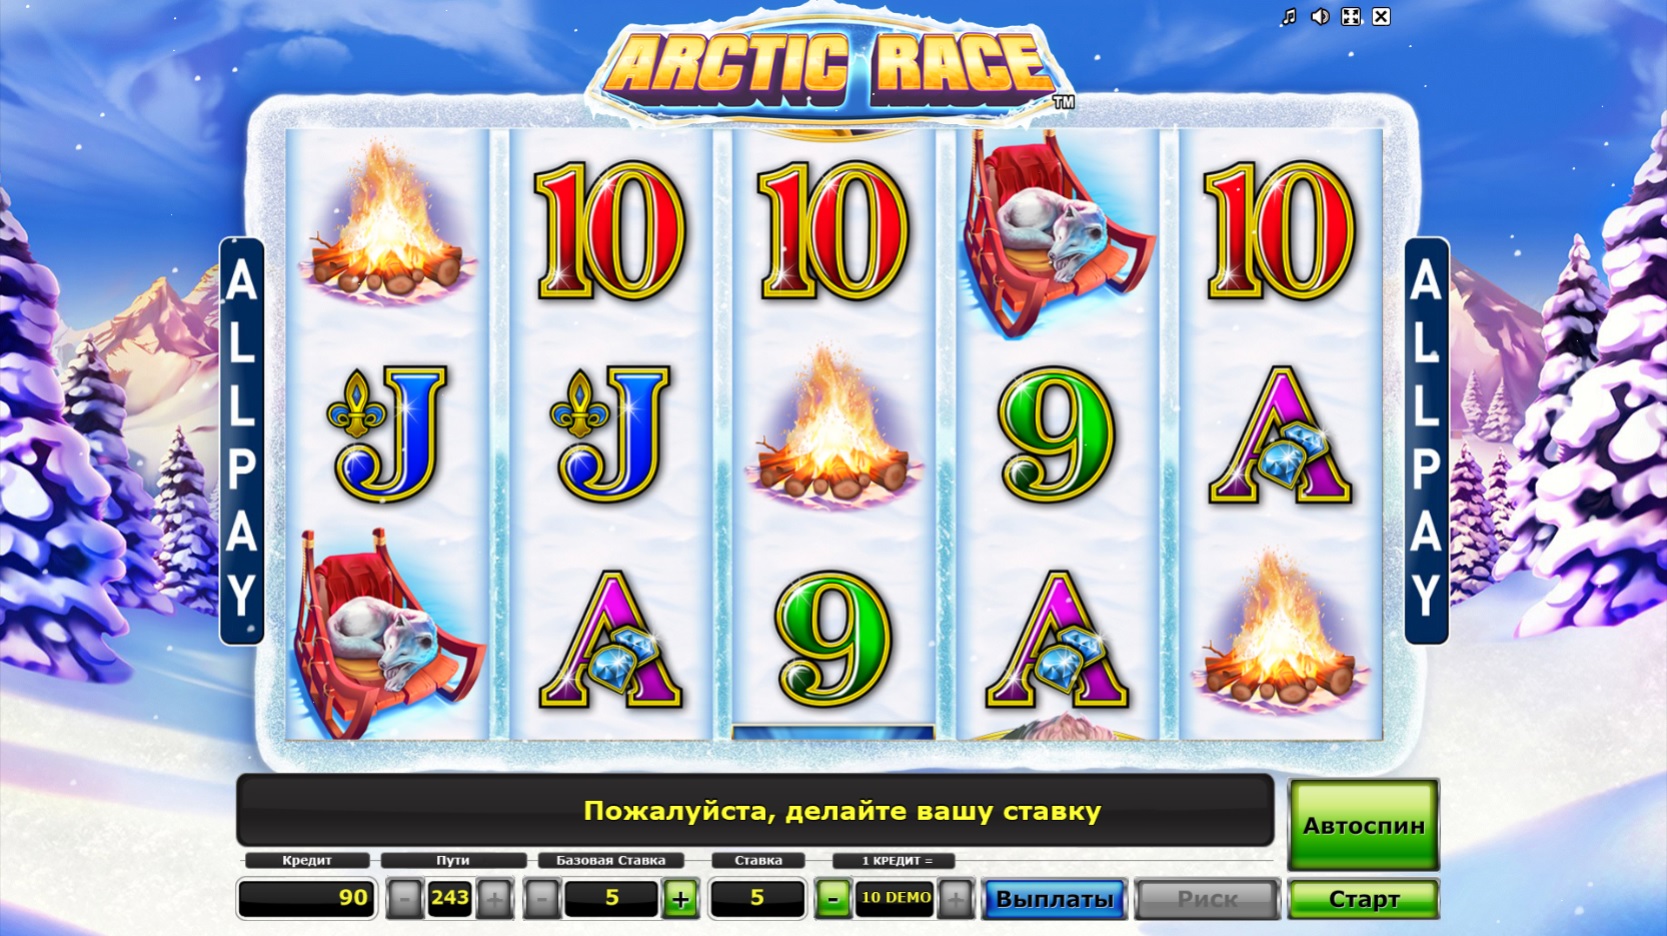 Arctic Race - игровой автомат Арктические гонки